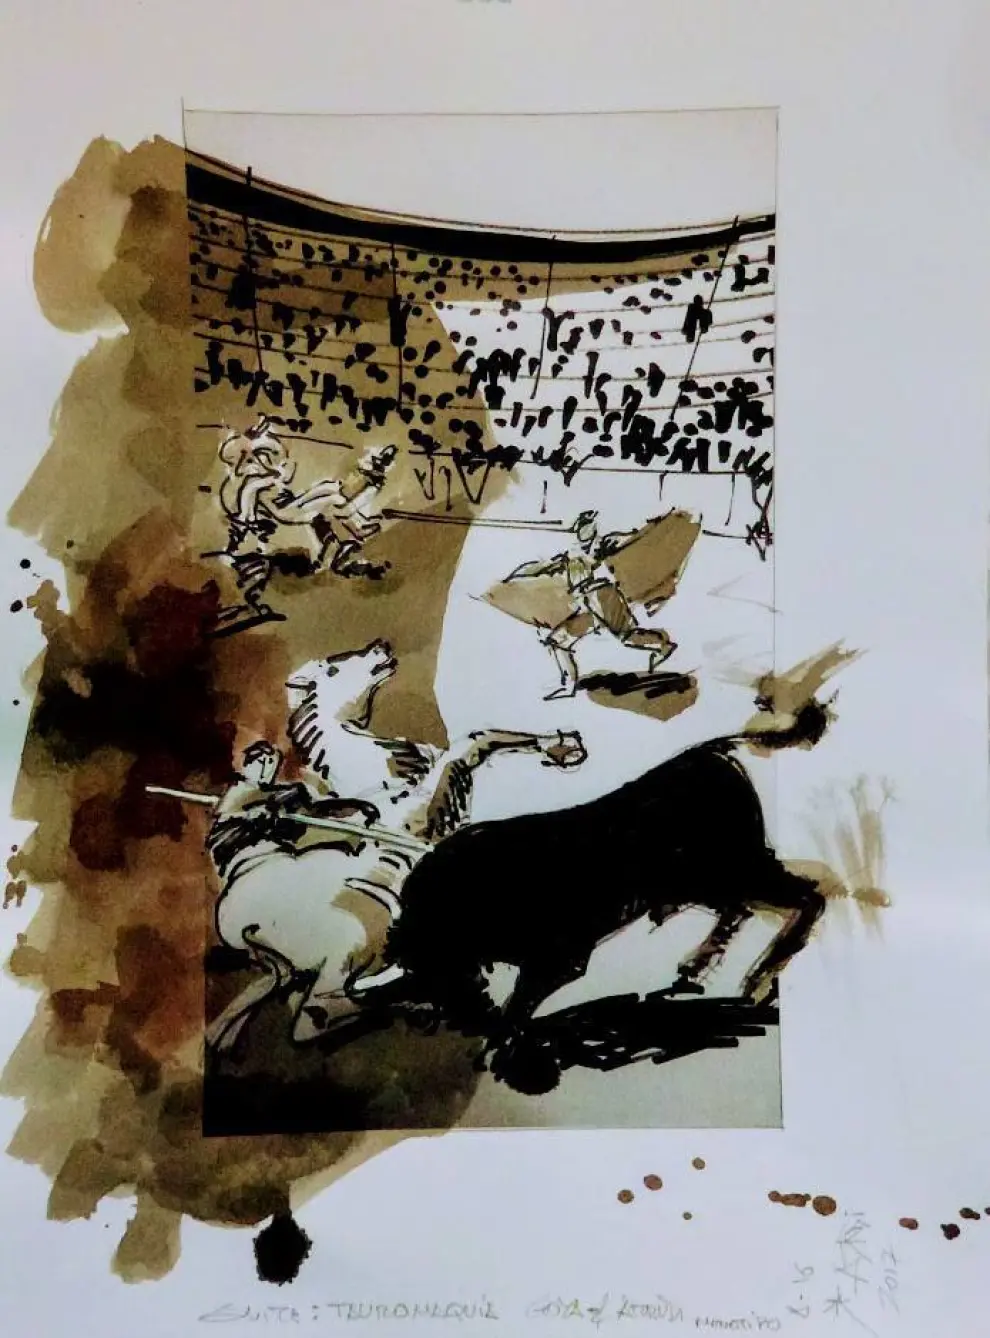 Pinturas de Miguel Ángel Arrudi inspiradas en las tauromaquias de Goya